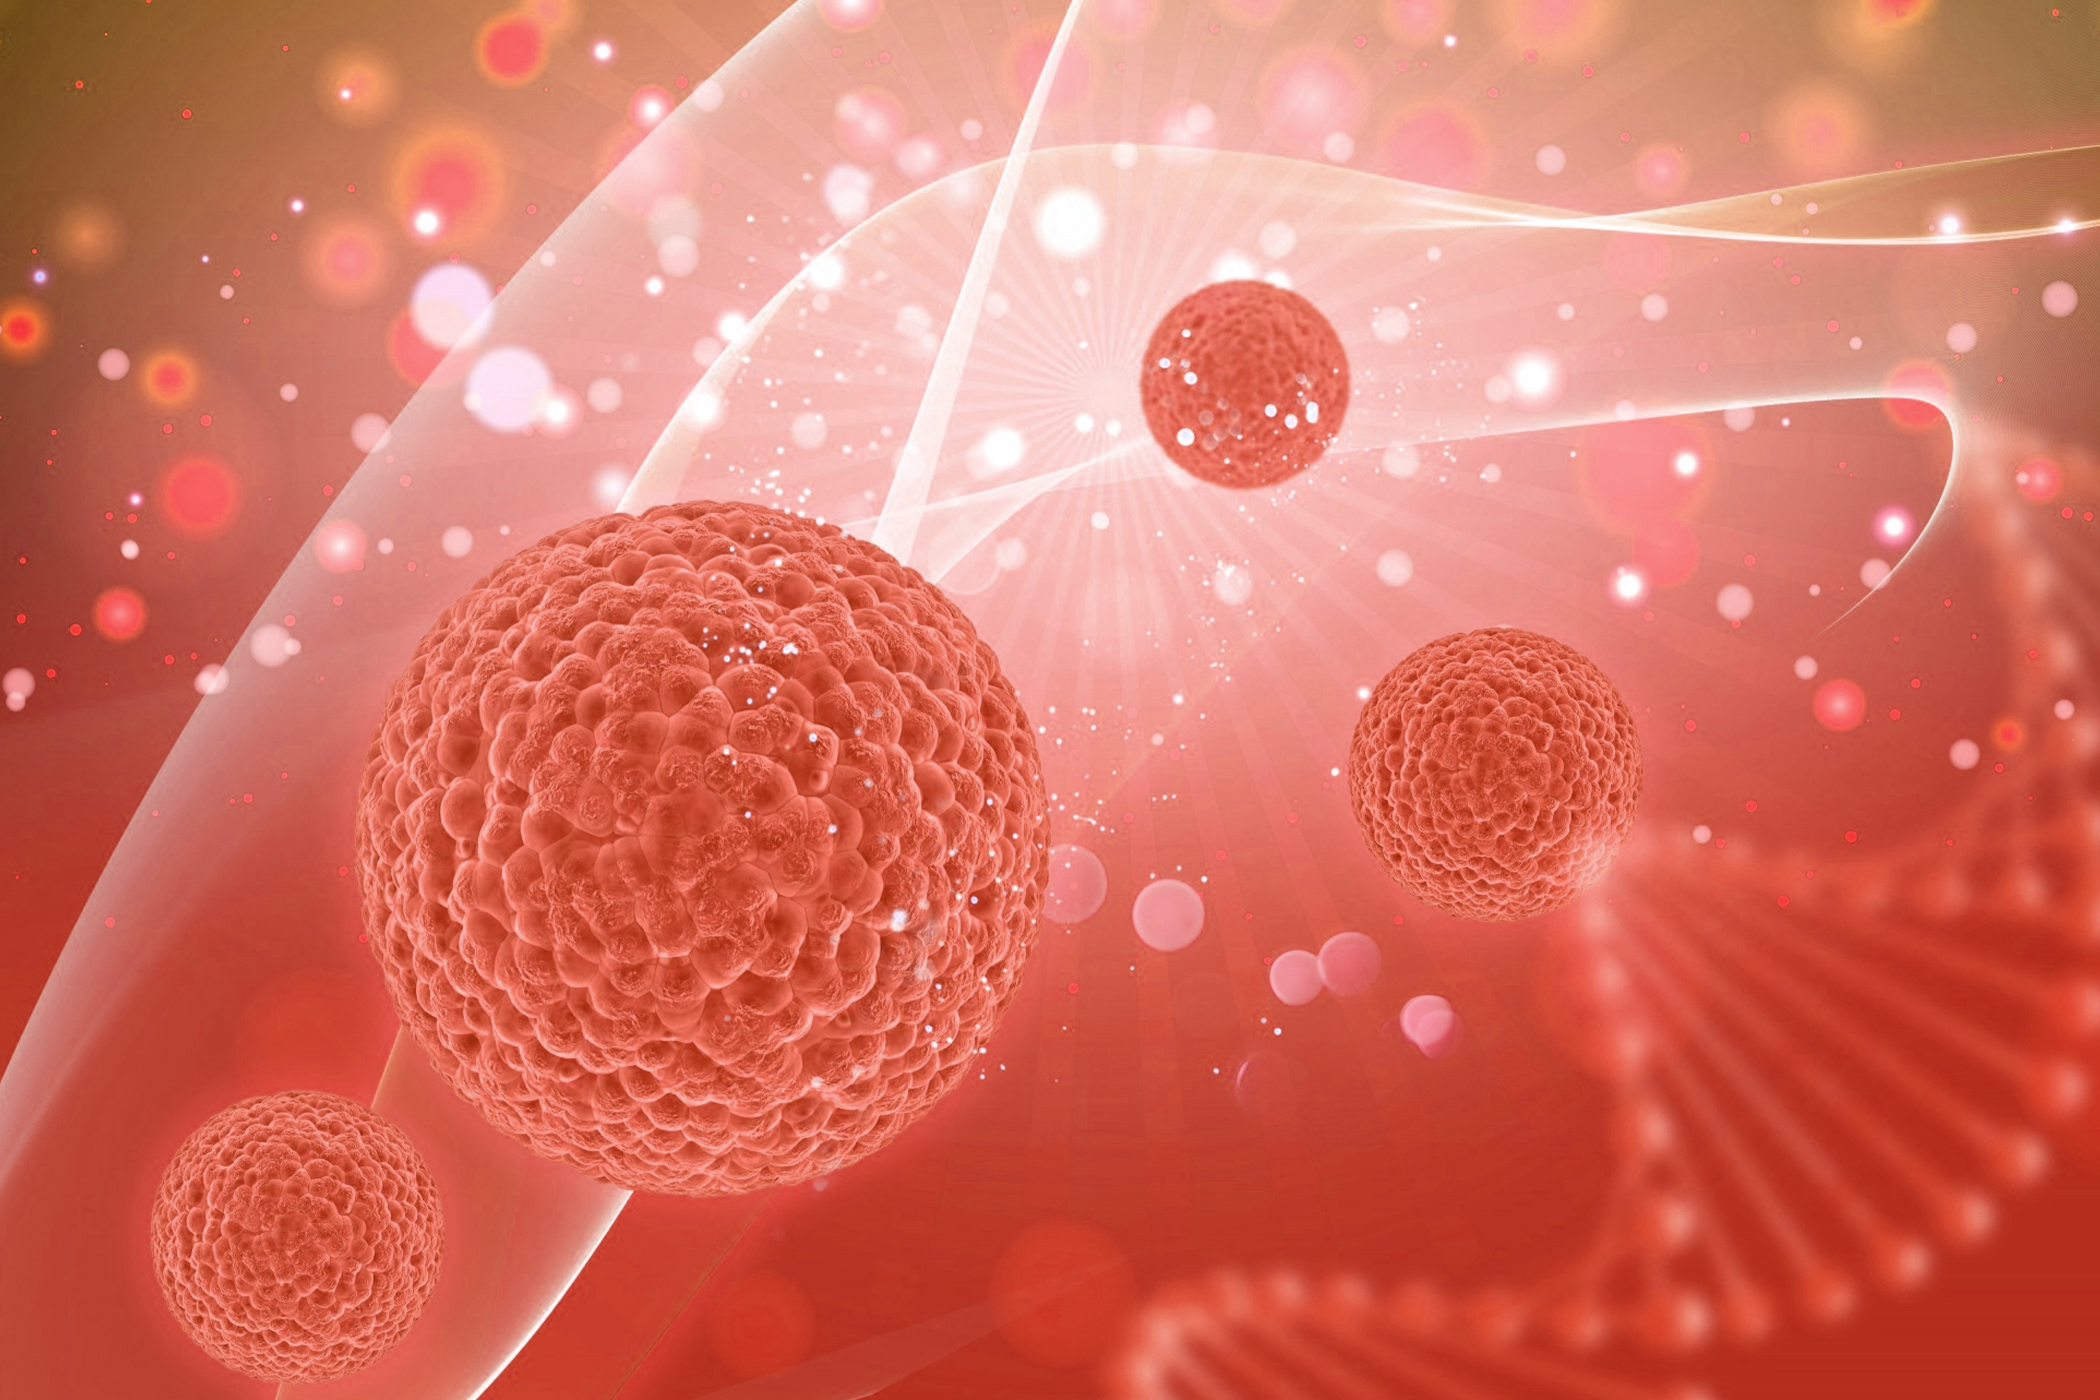 การรักษามะเร็งด้วยวิธี
เซลล์ภูมิคุ้มกันบำบัดที-เซลล์ แบบลูกผสมที่มีความจำเพาะต่อโปรตีนของเซลล์มะเร็งเต้านม